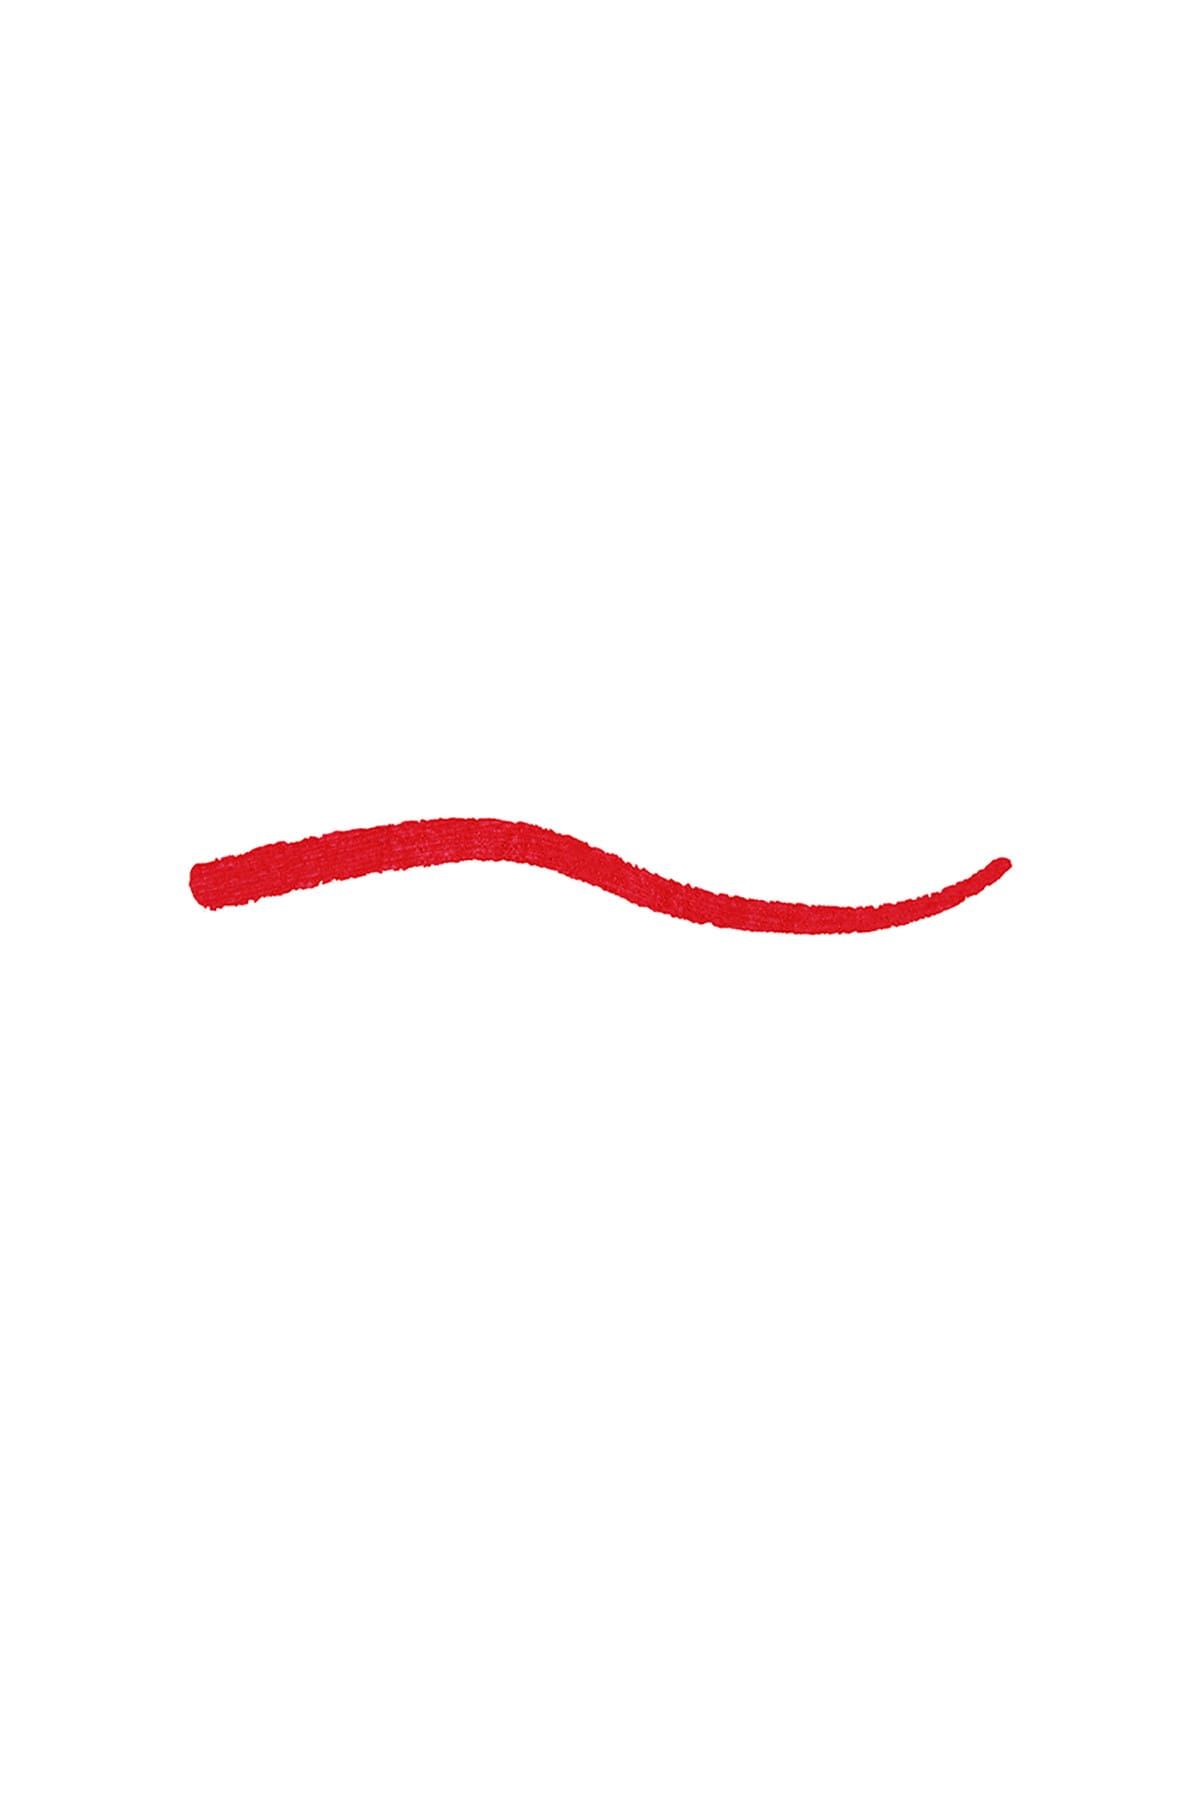 KIKO مداد لب Smart Fusion بافت نرم و روان شماره 514 رنگ قرمز خشخاشی